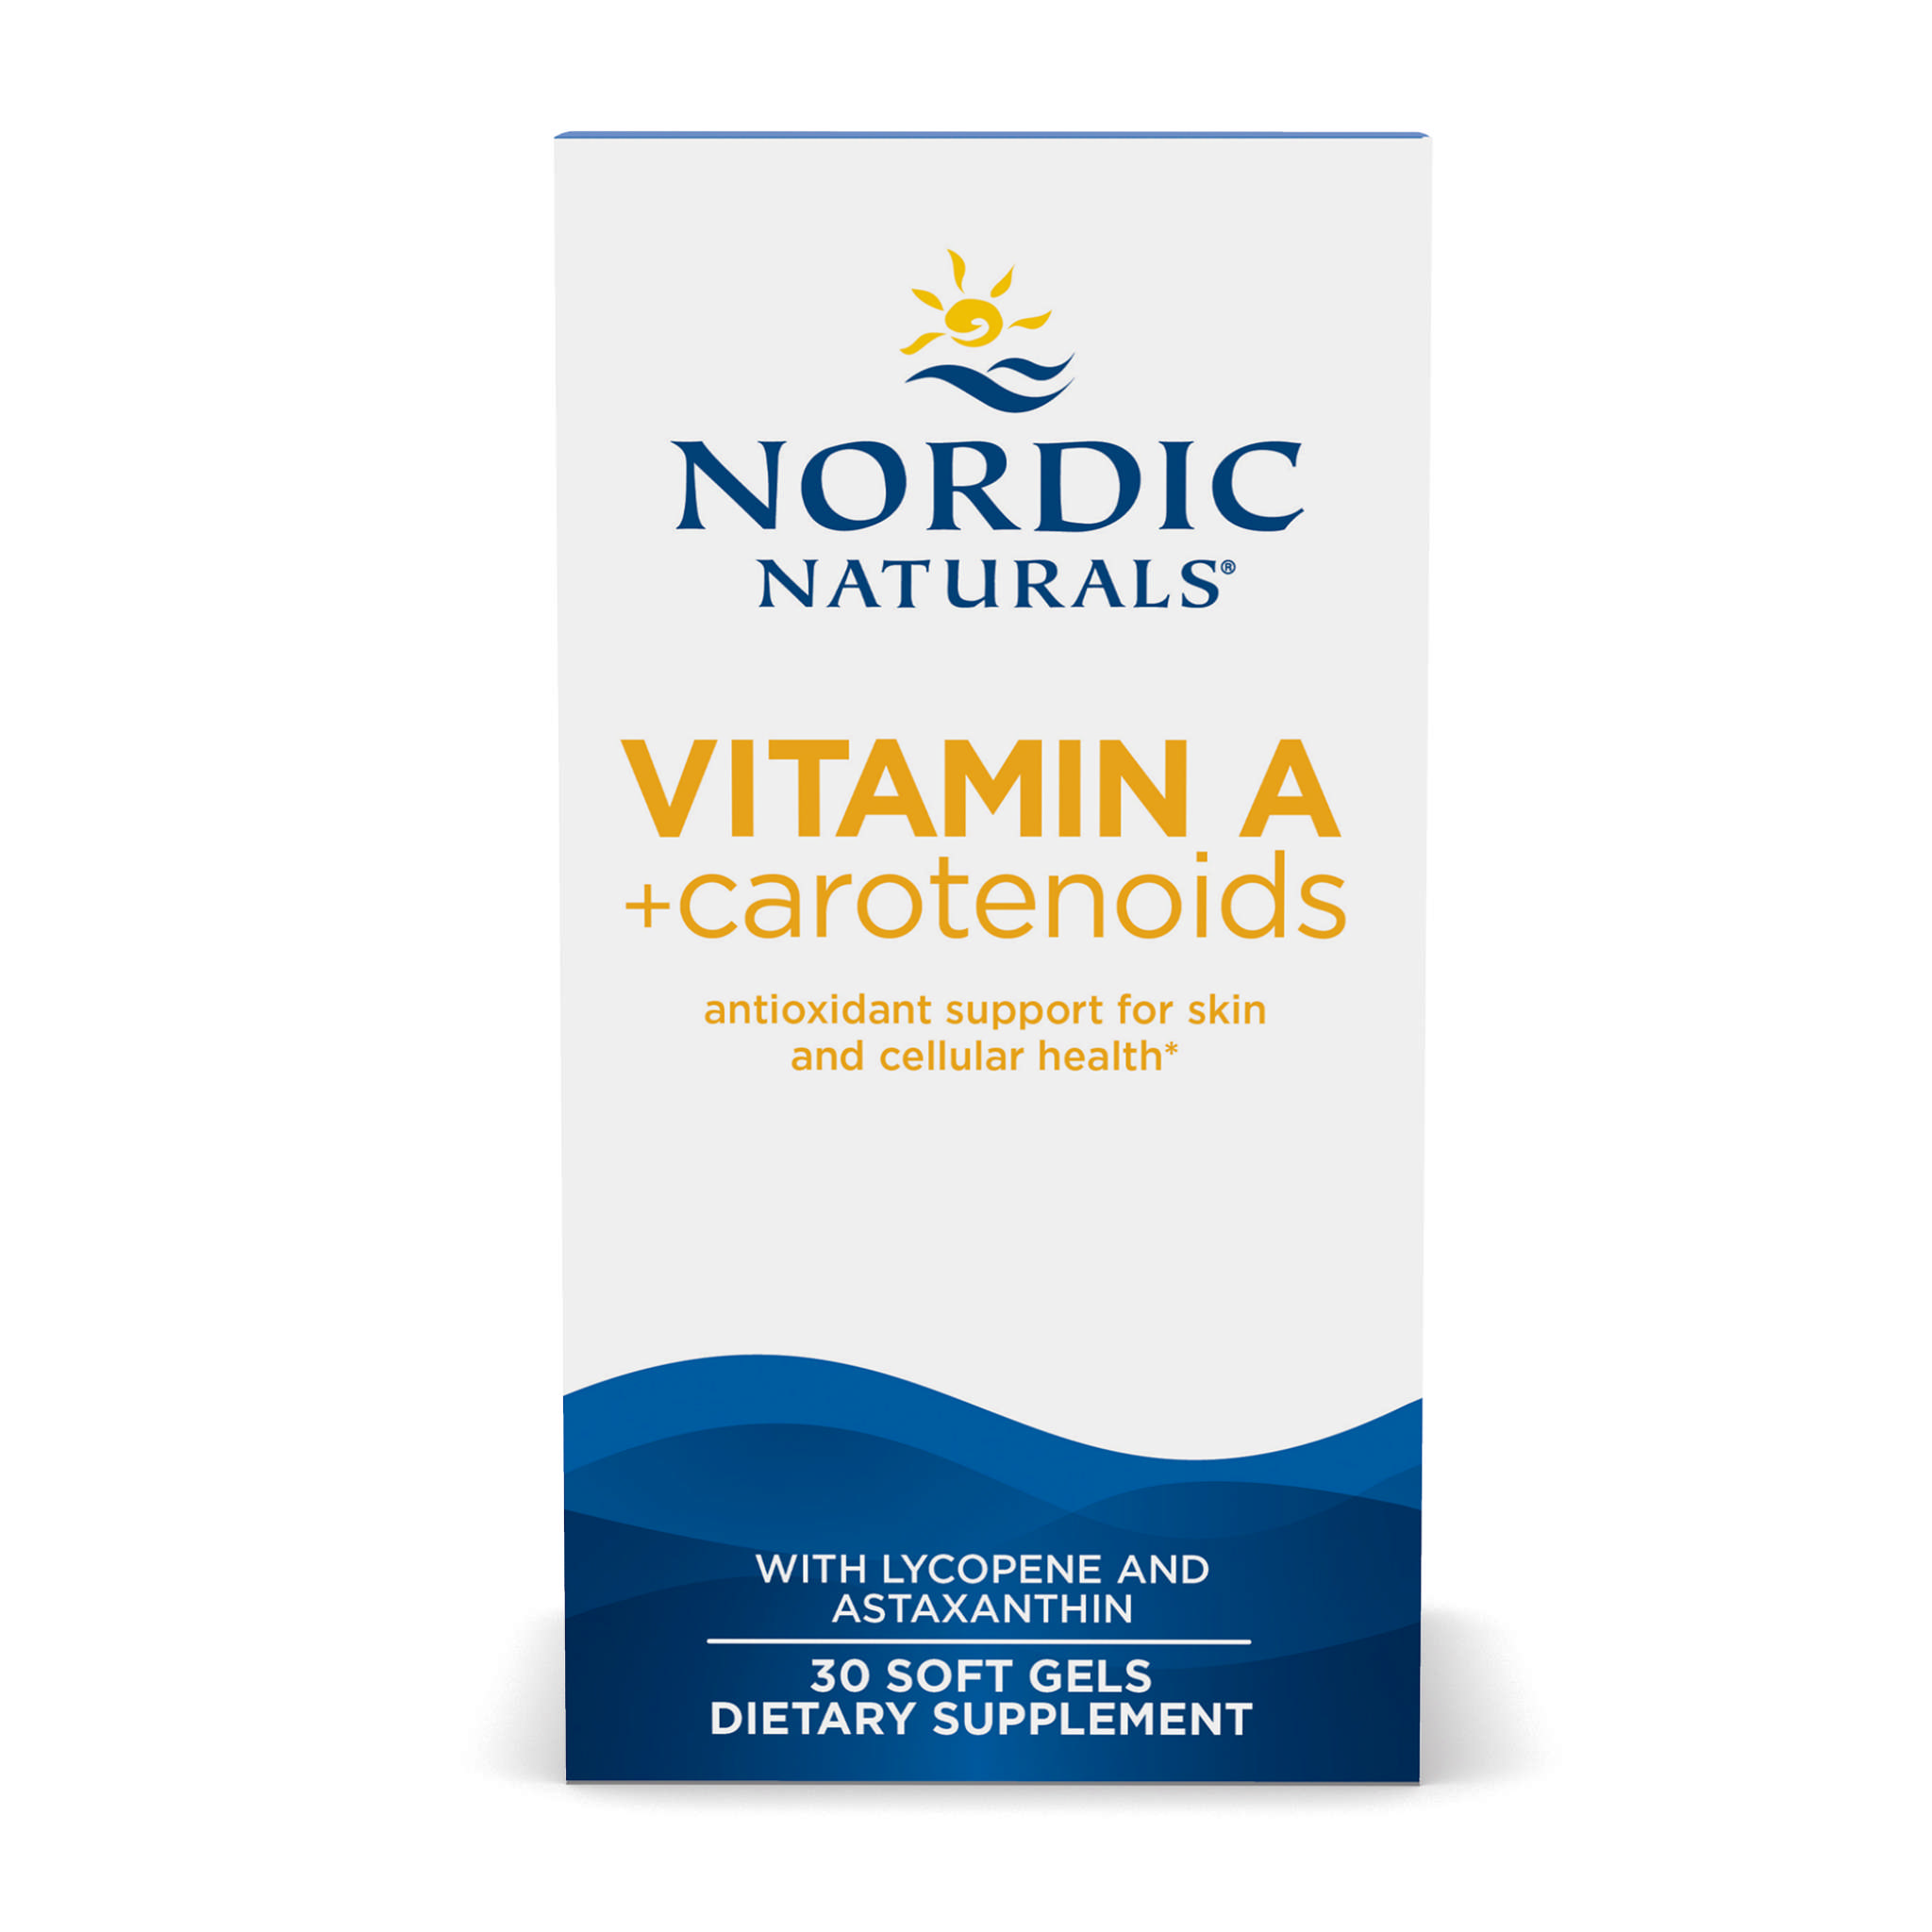 Nordic Naturals - A + Carotenoids softgel